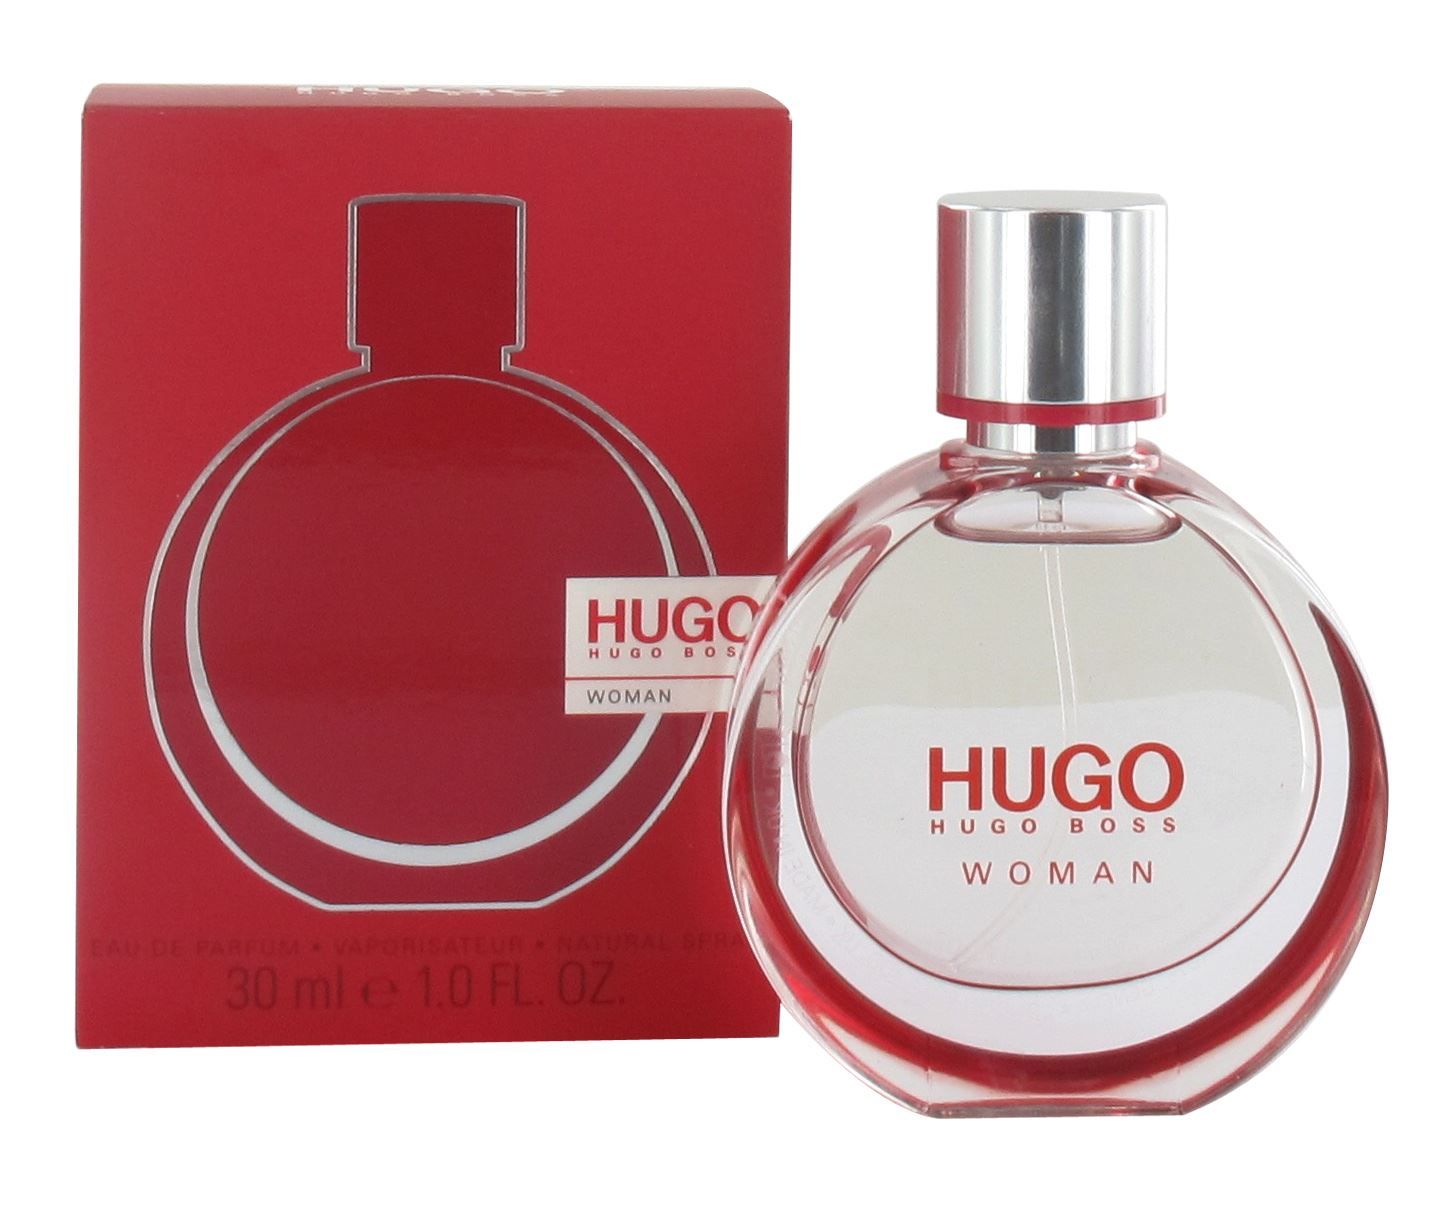 Хьюго босс описание. Hugo Boss woman Eau de Parfum. Hugo Boss woman 30 мл. Hugo Boss Hugo woman Eau de Parfum. Парфюмерная вода Hugo Boss Hugo woman, 30 мл.